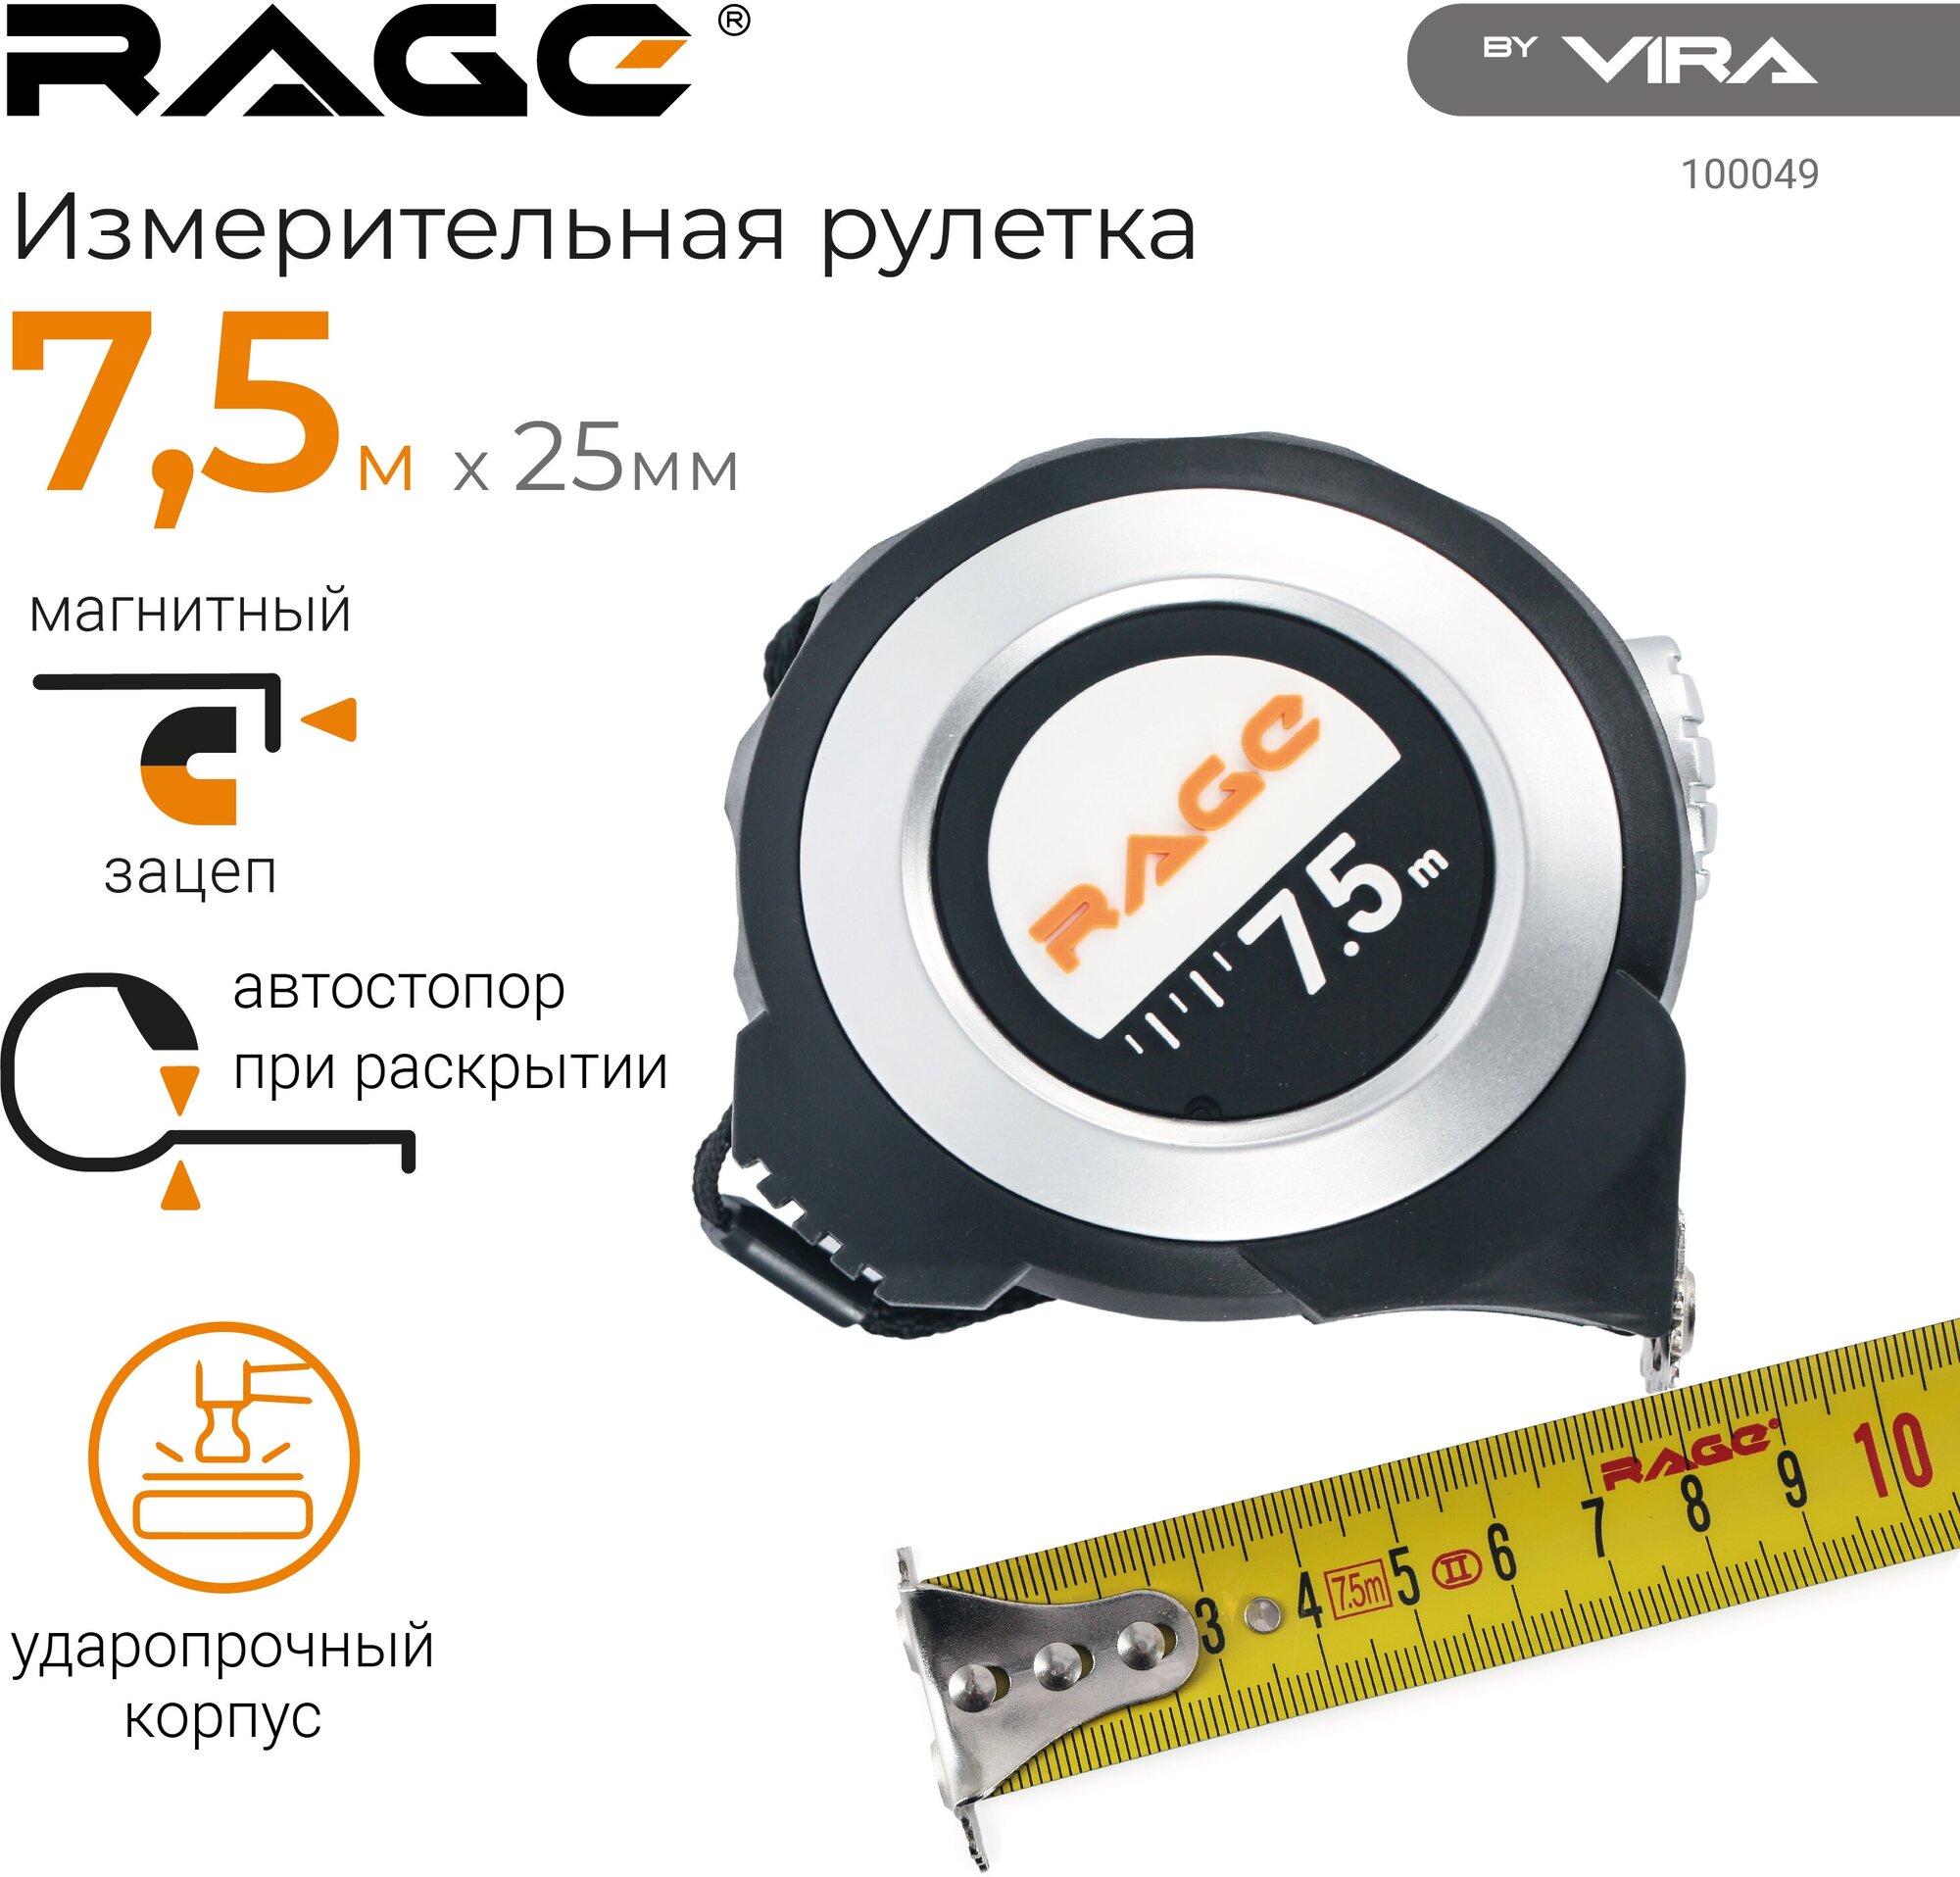 Рулетка Vira Rage 100049